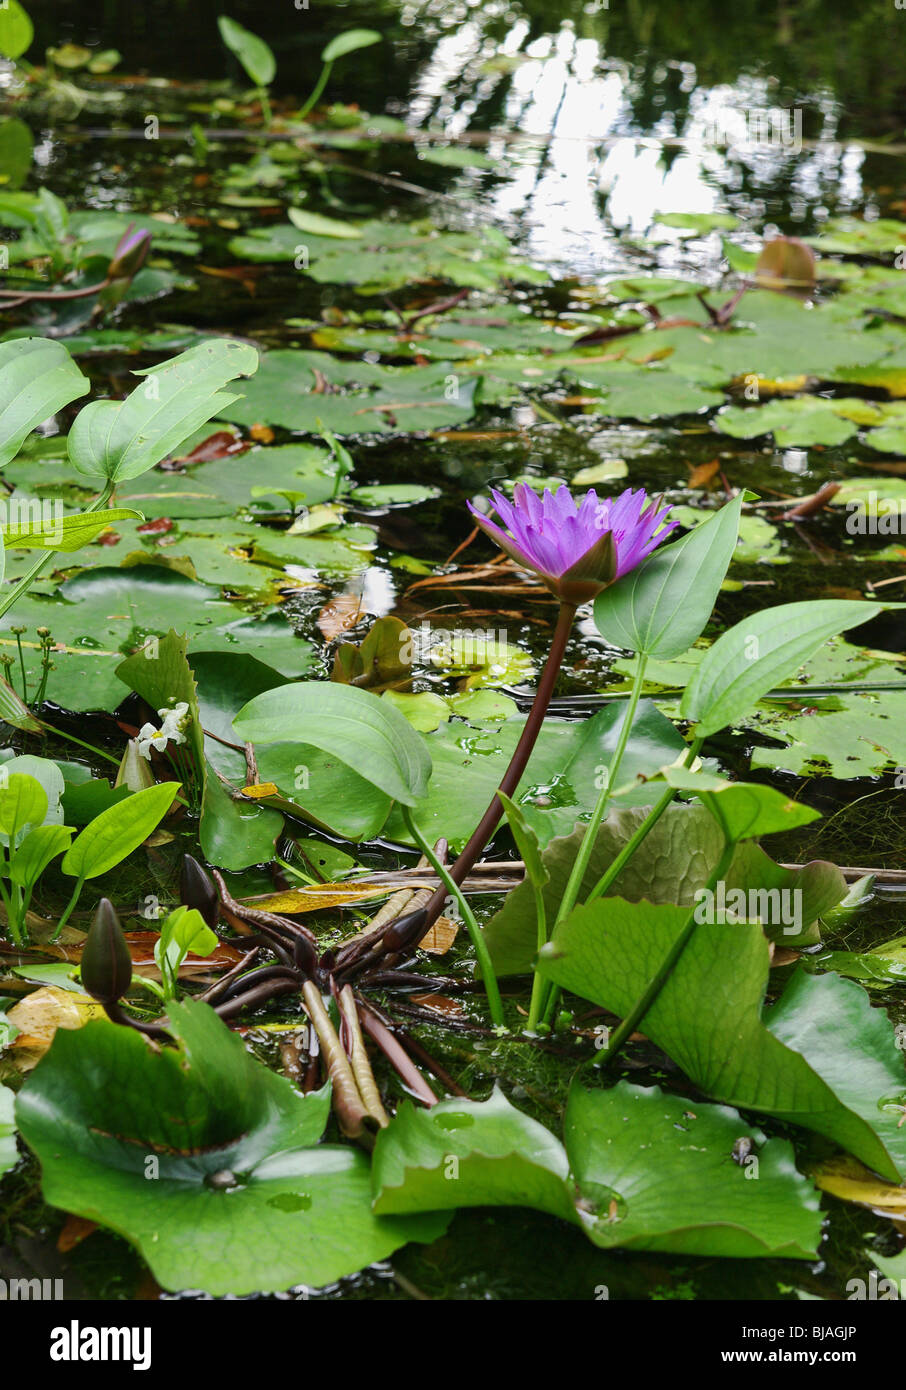 tolles Bild von einem Wasser-Lilly in einem Gartenteich Stockfoto